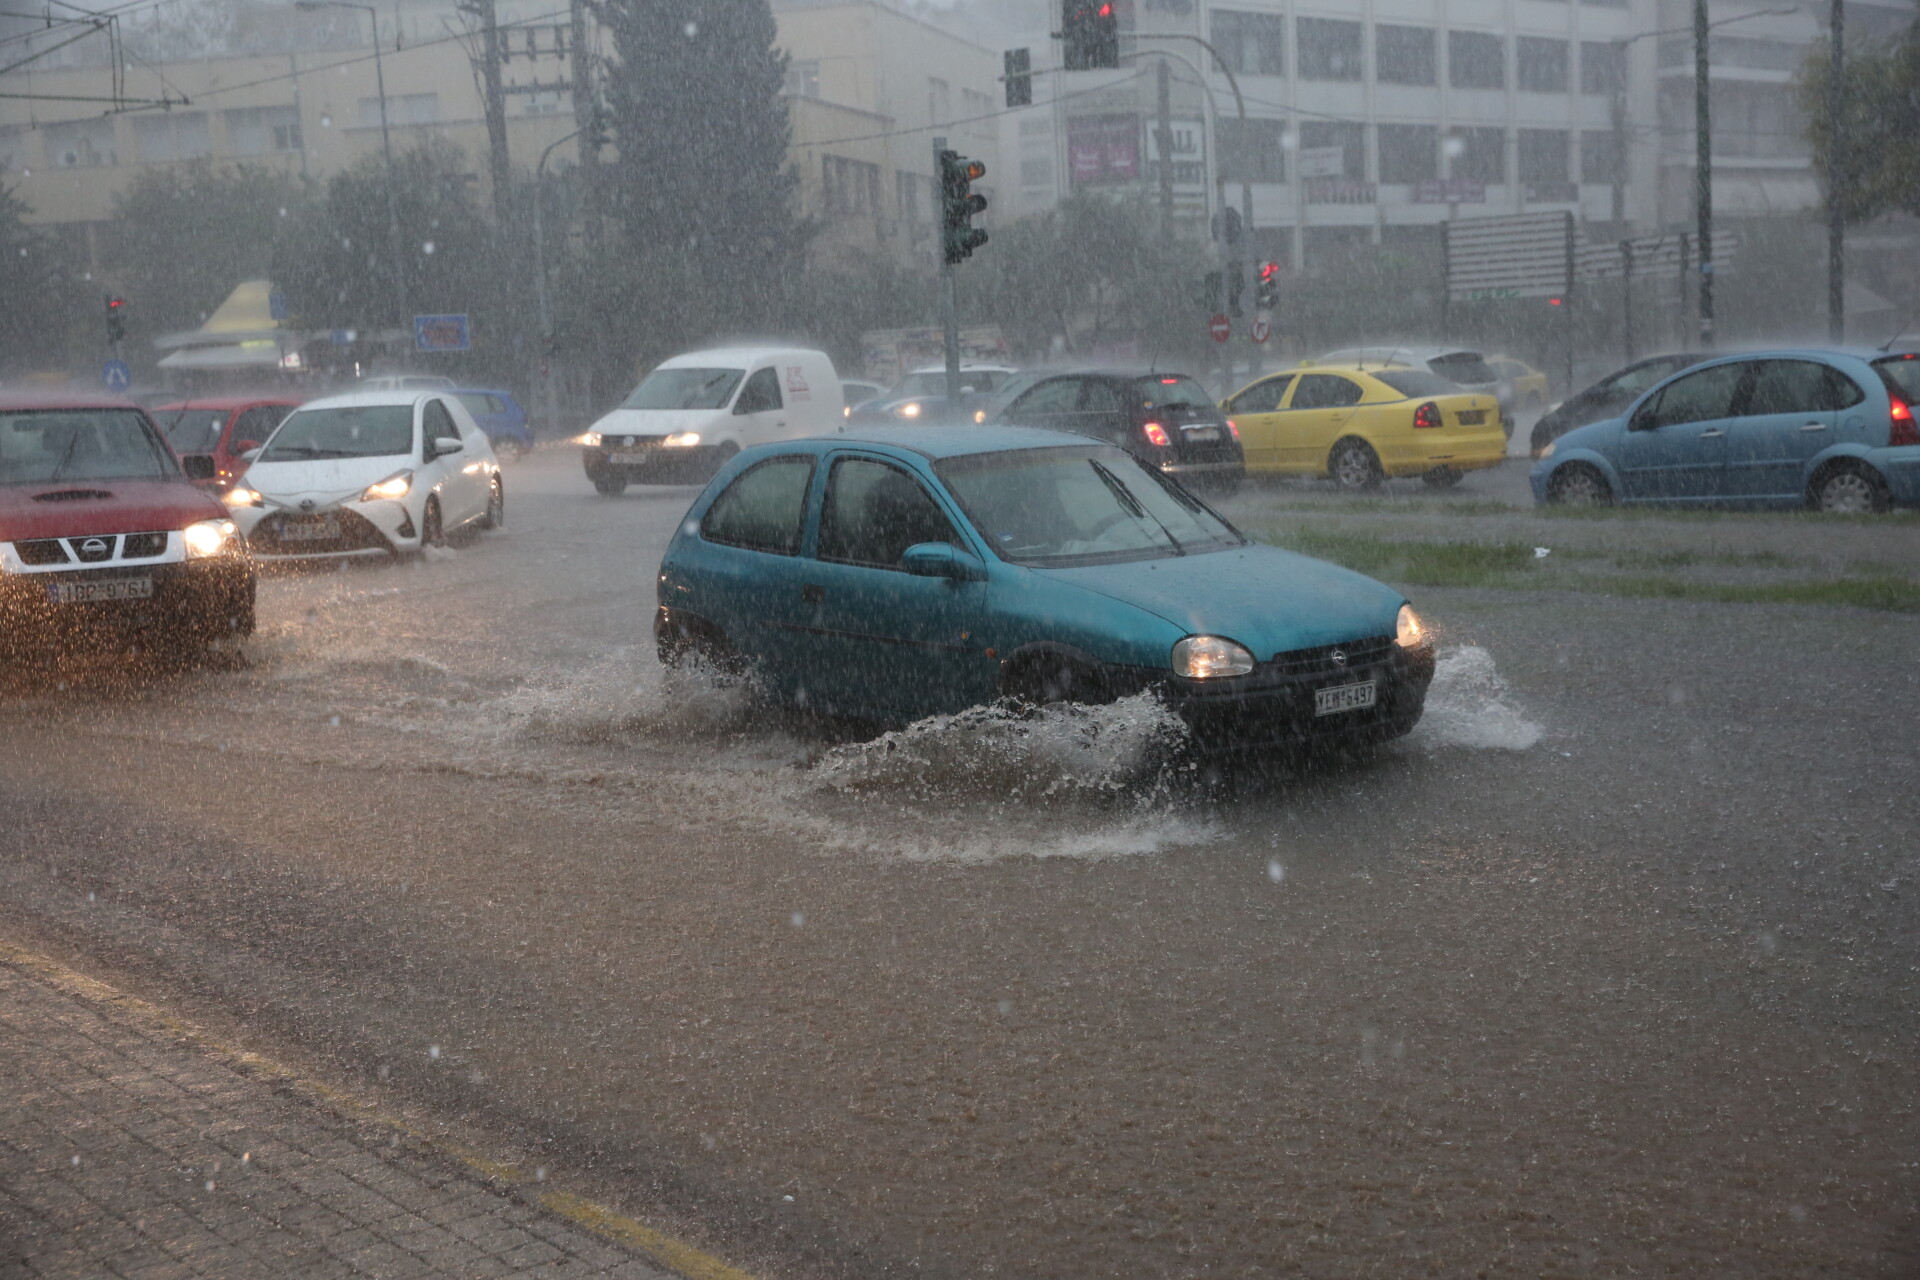 Οχήματα κινούνται στη Λεωφ. Χαμοστέρνας, που έχει πλημμυρίσει λόγω της καταρρακτώδους βροχής που πέφτει τις τελευταίες ώρες ©ΑΠΕ-ΜΠΕ/ΑΠΕ-ΜΠΕ/ΟΡΕΣΤΗΣ ΠΑΝΑΓΙΩΤΟΥ